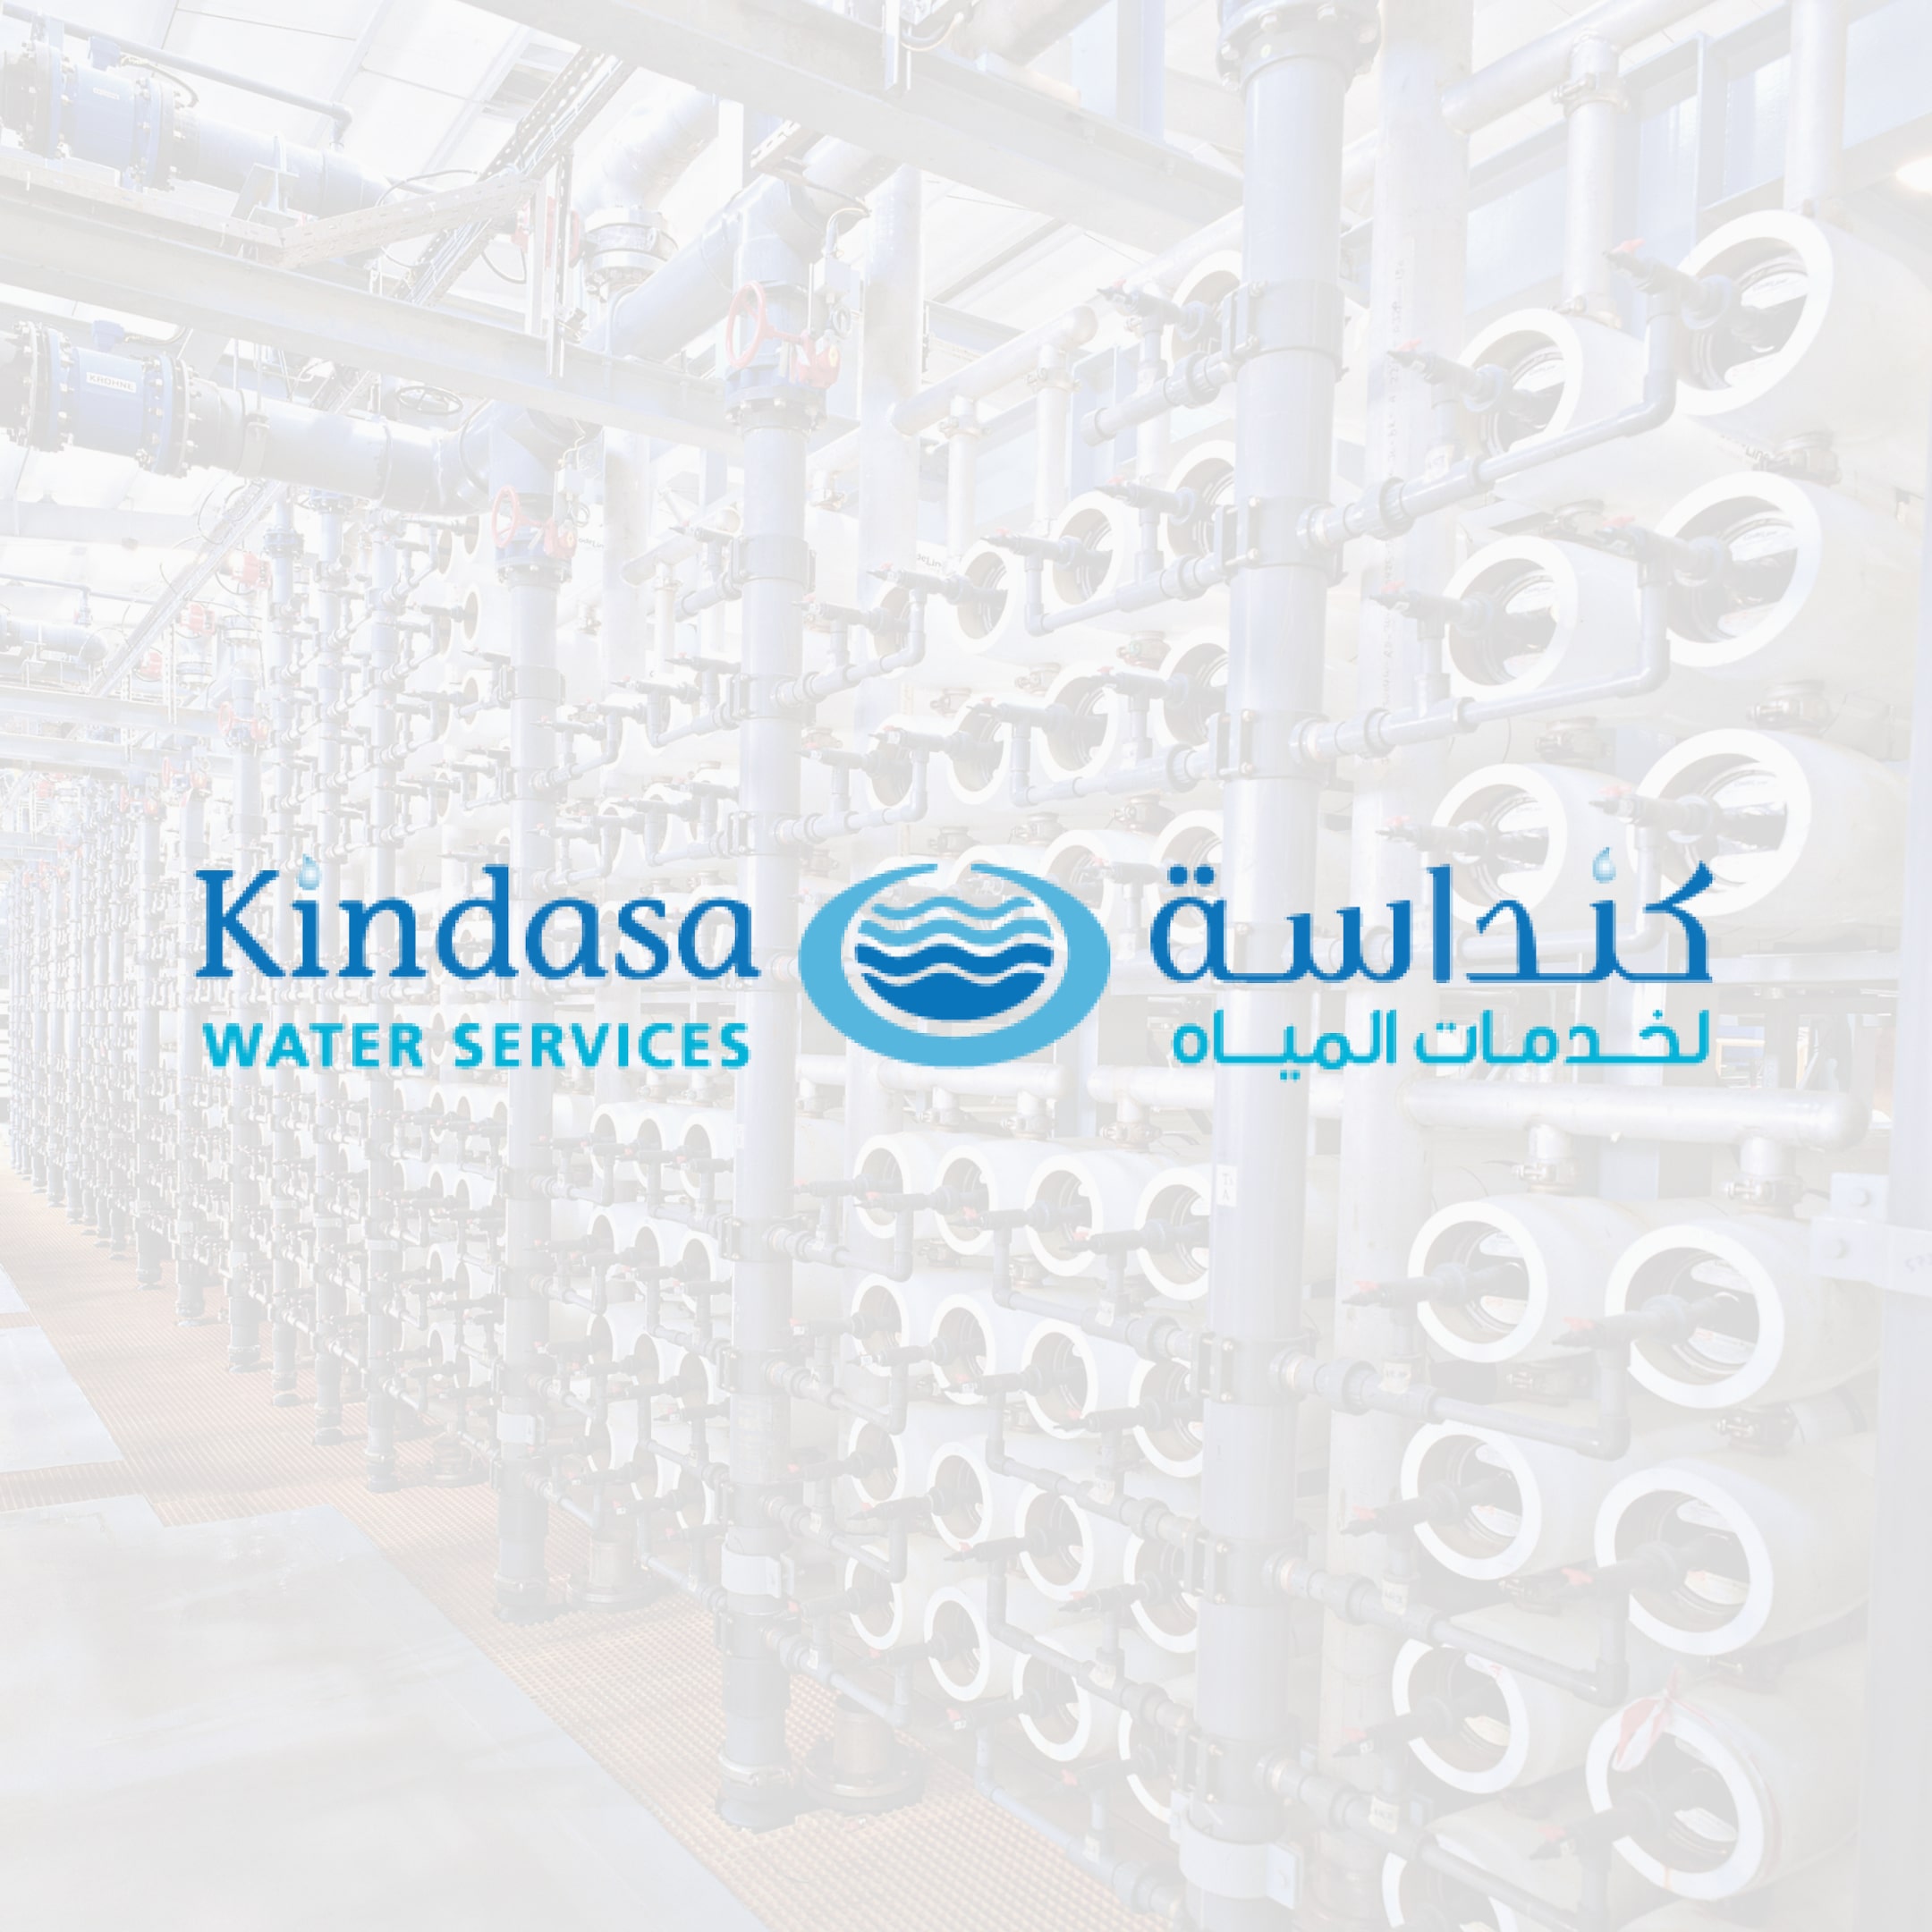 Kindasa Water Services